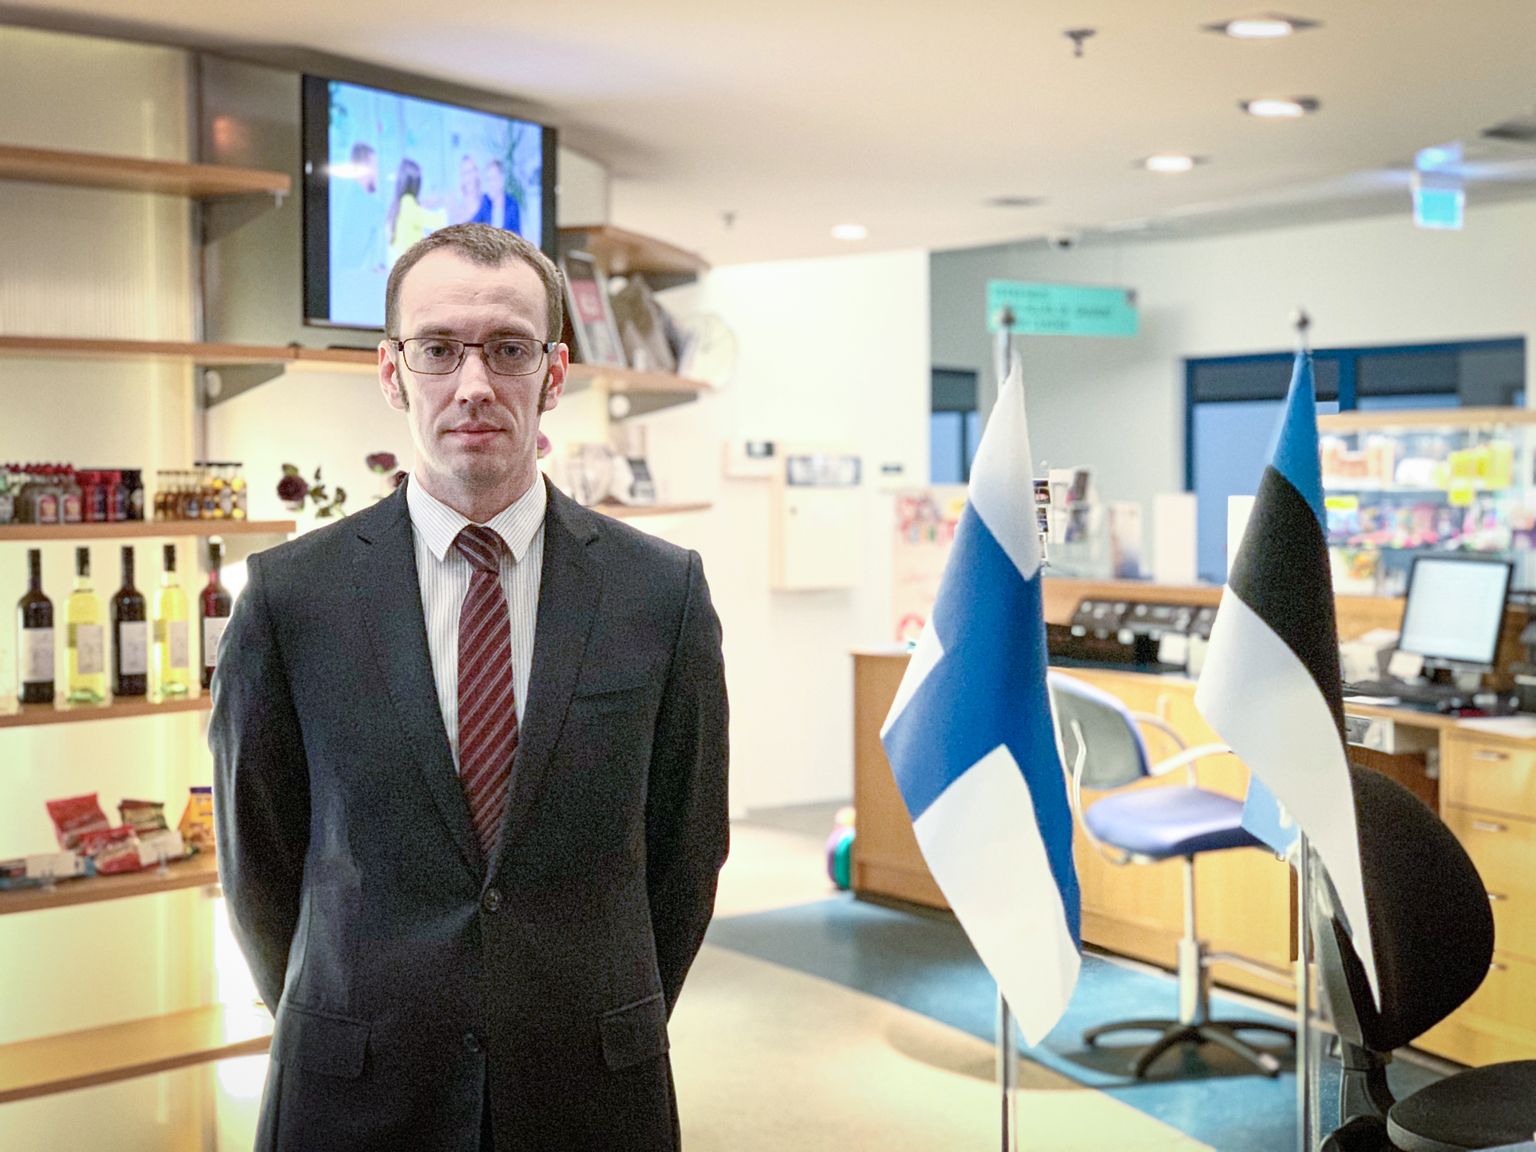 SOOMLASI NAPIB: Saaremaa spaahotellide müügijuht Urmas Pilt tõdeb, et nad üritavad sõltuvust soomlastest vähendada.